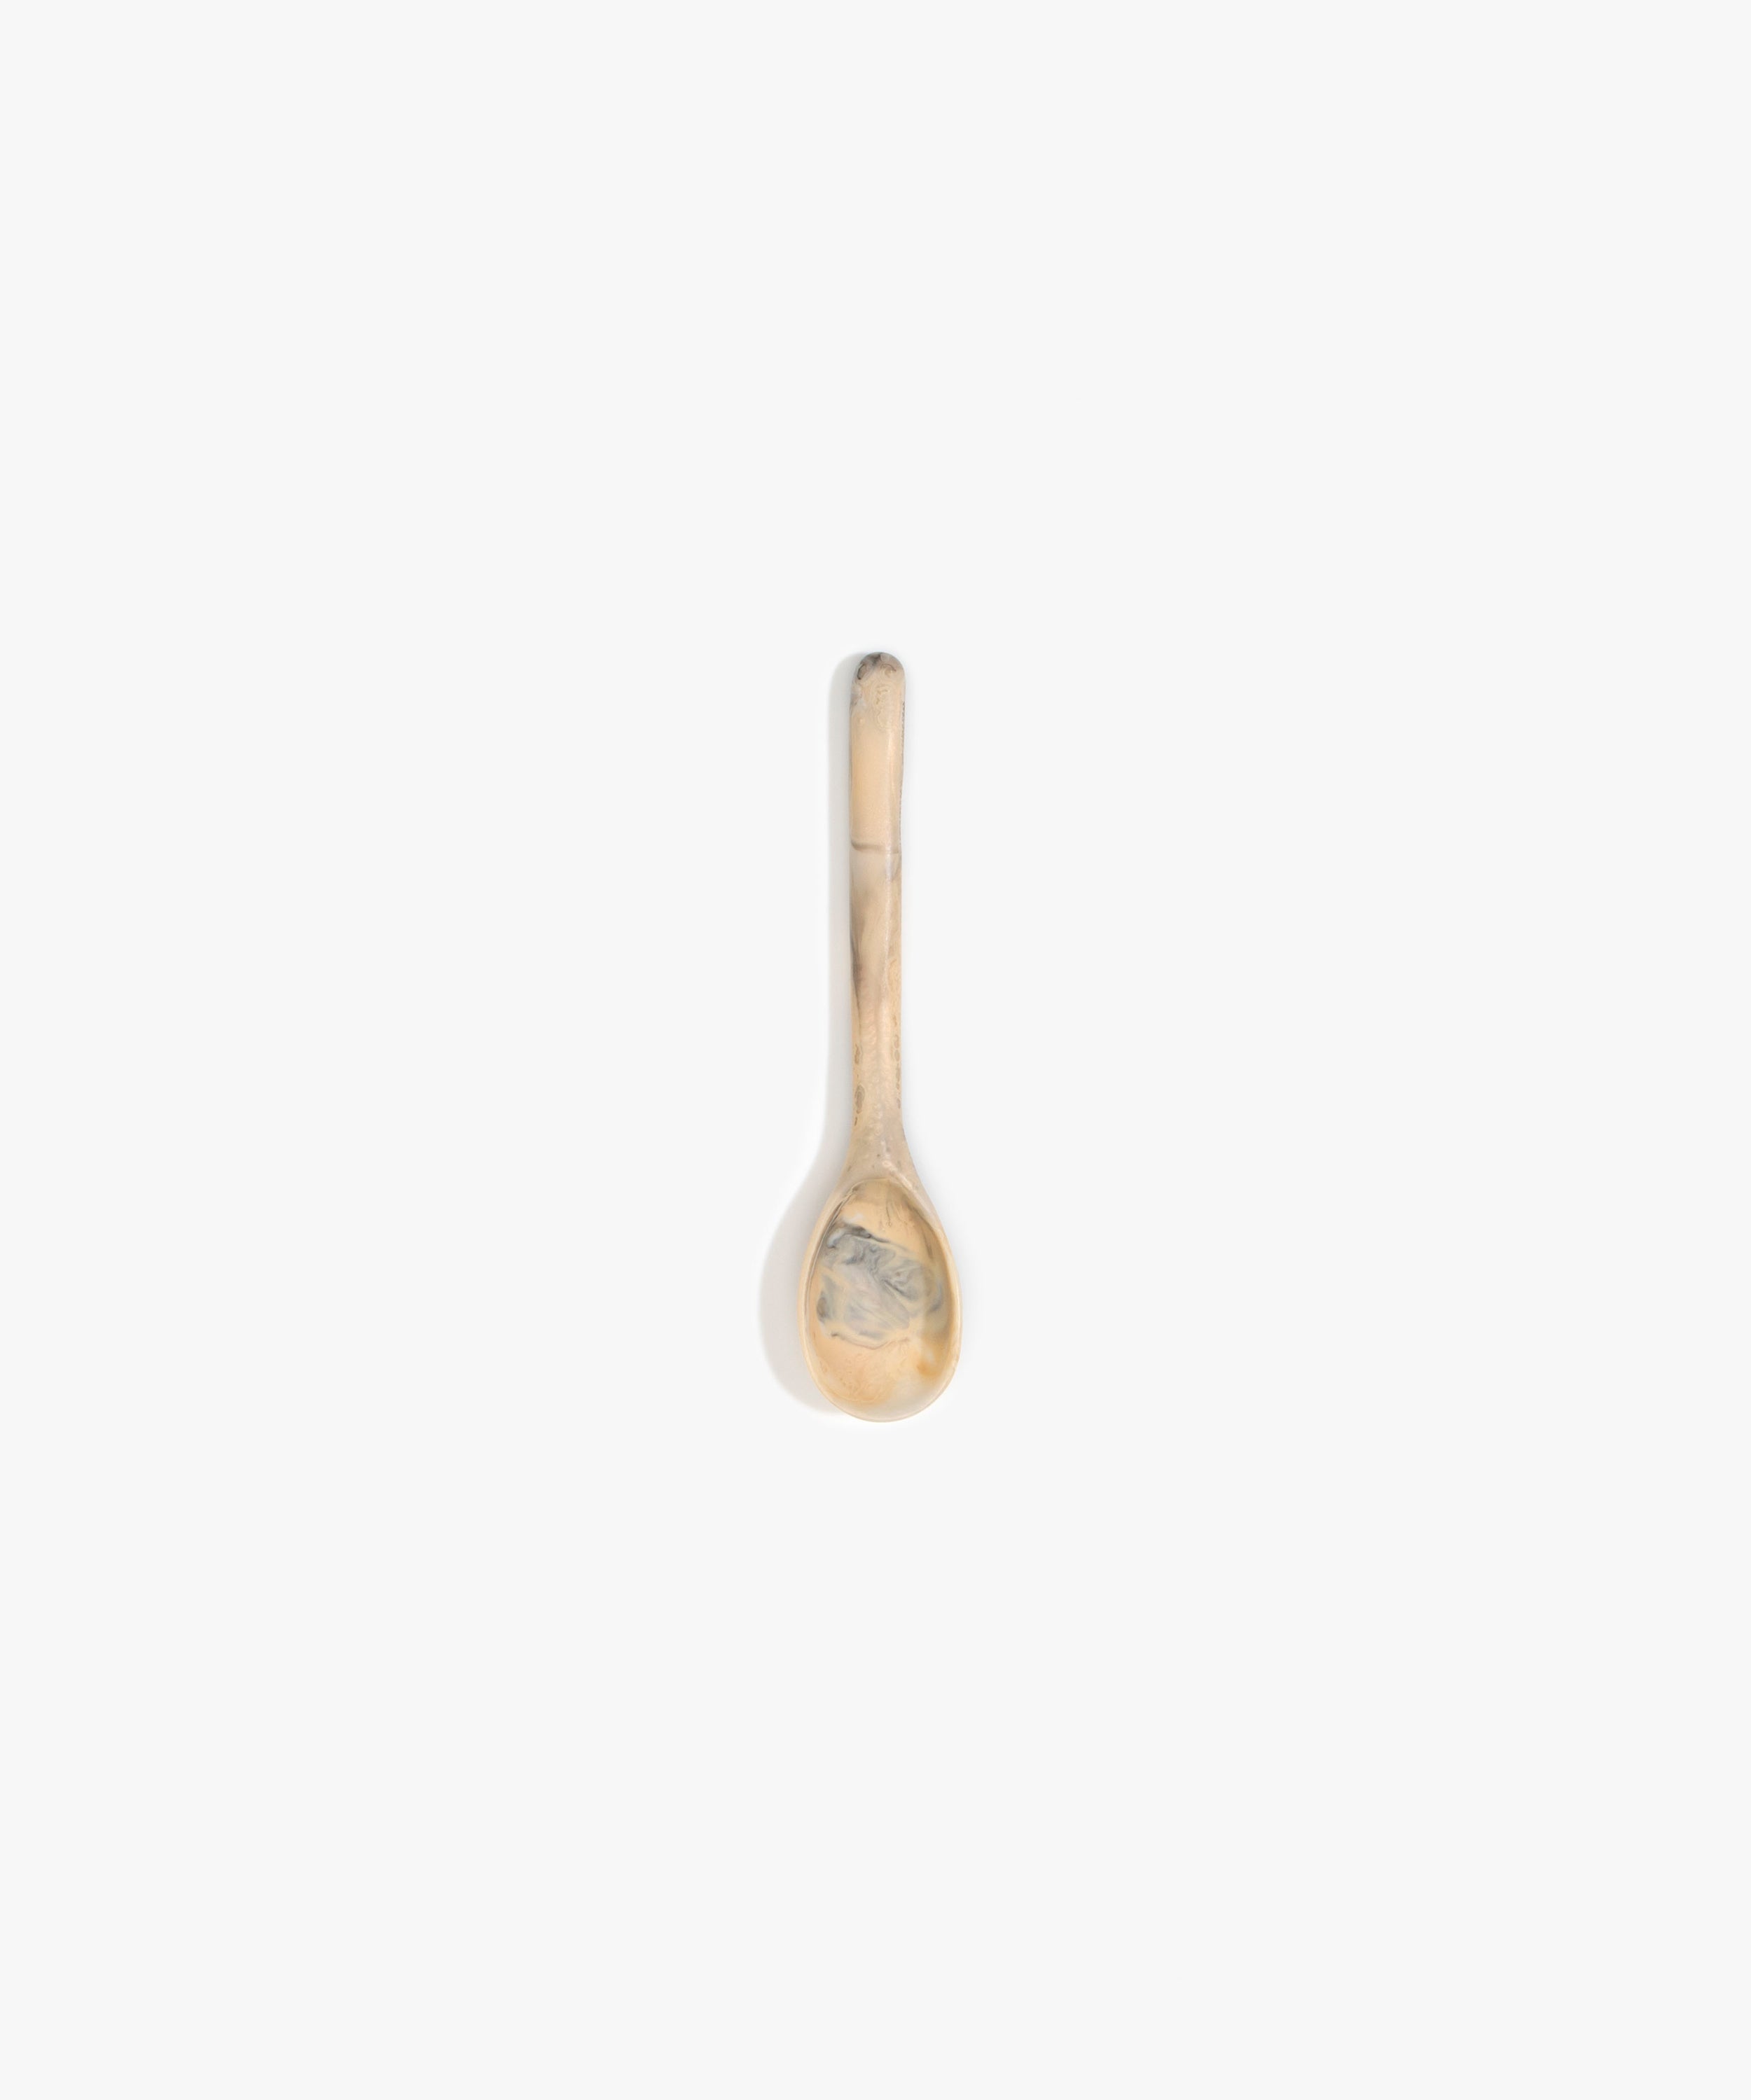 Stone Spoon